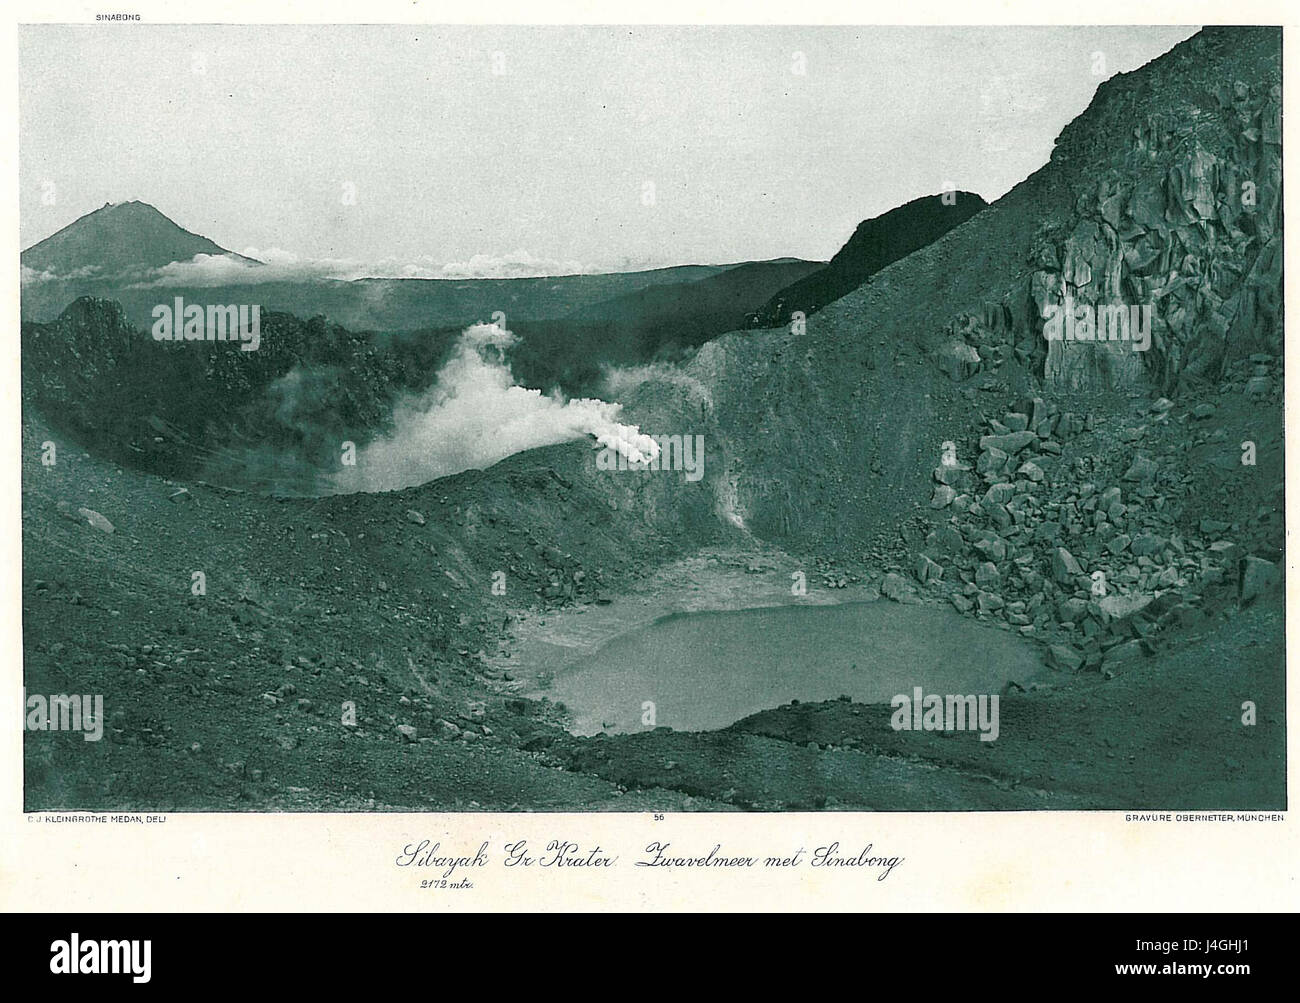 Sibayak Grosser Krater Stock Photo